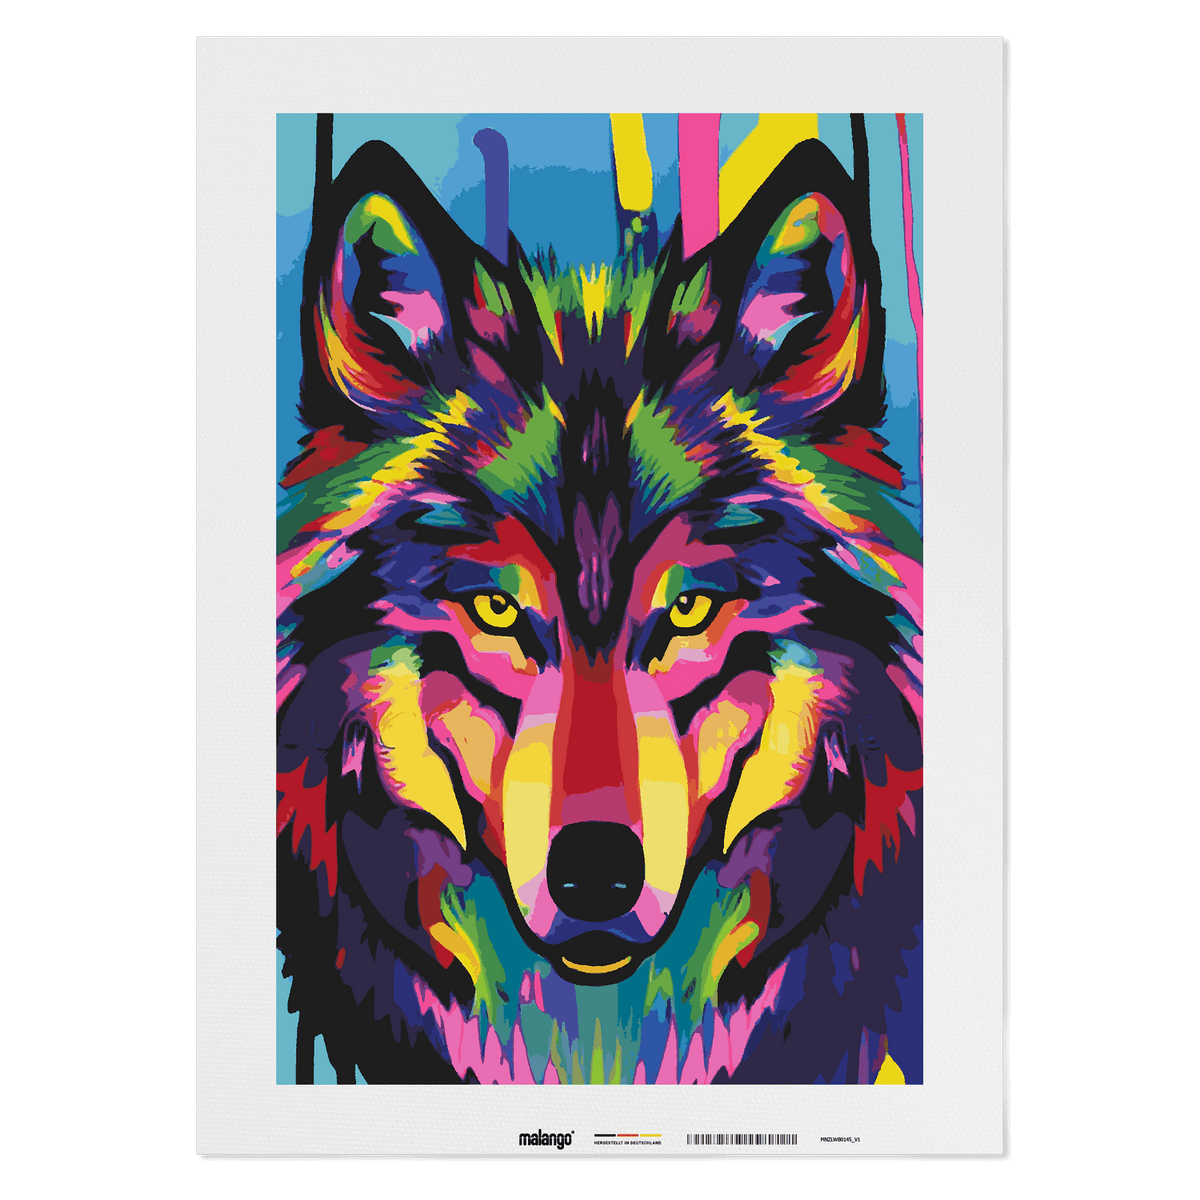 Malen nach Zahlen - Wolf Wilko